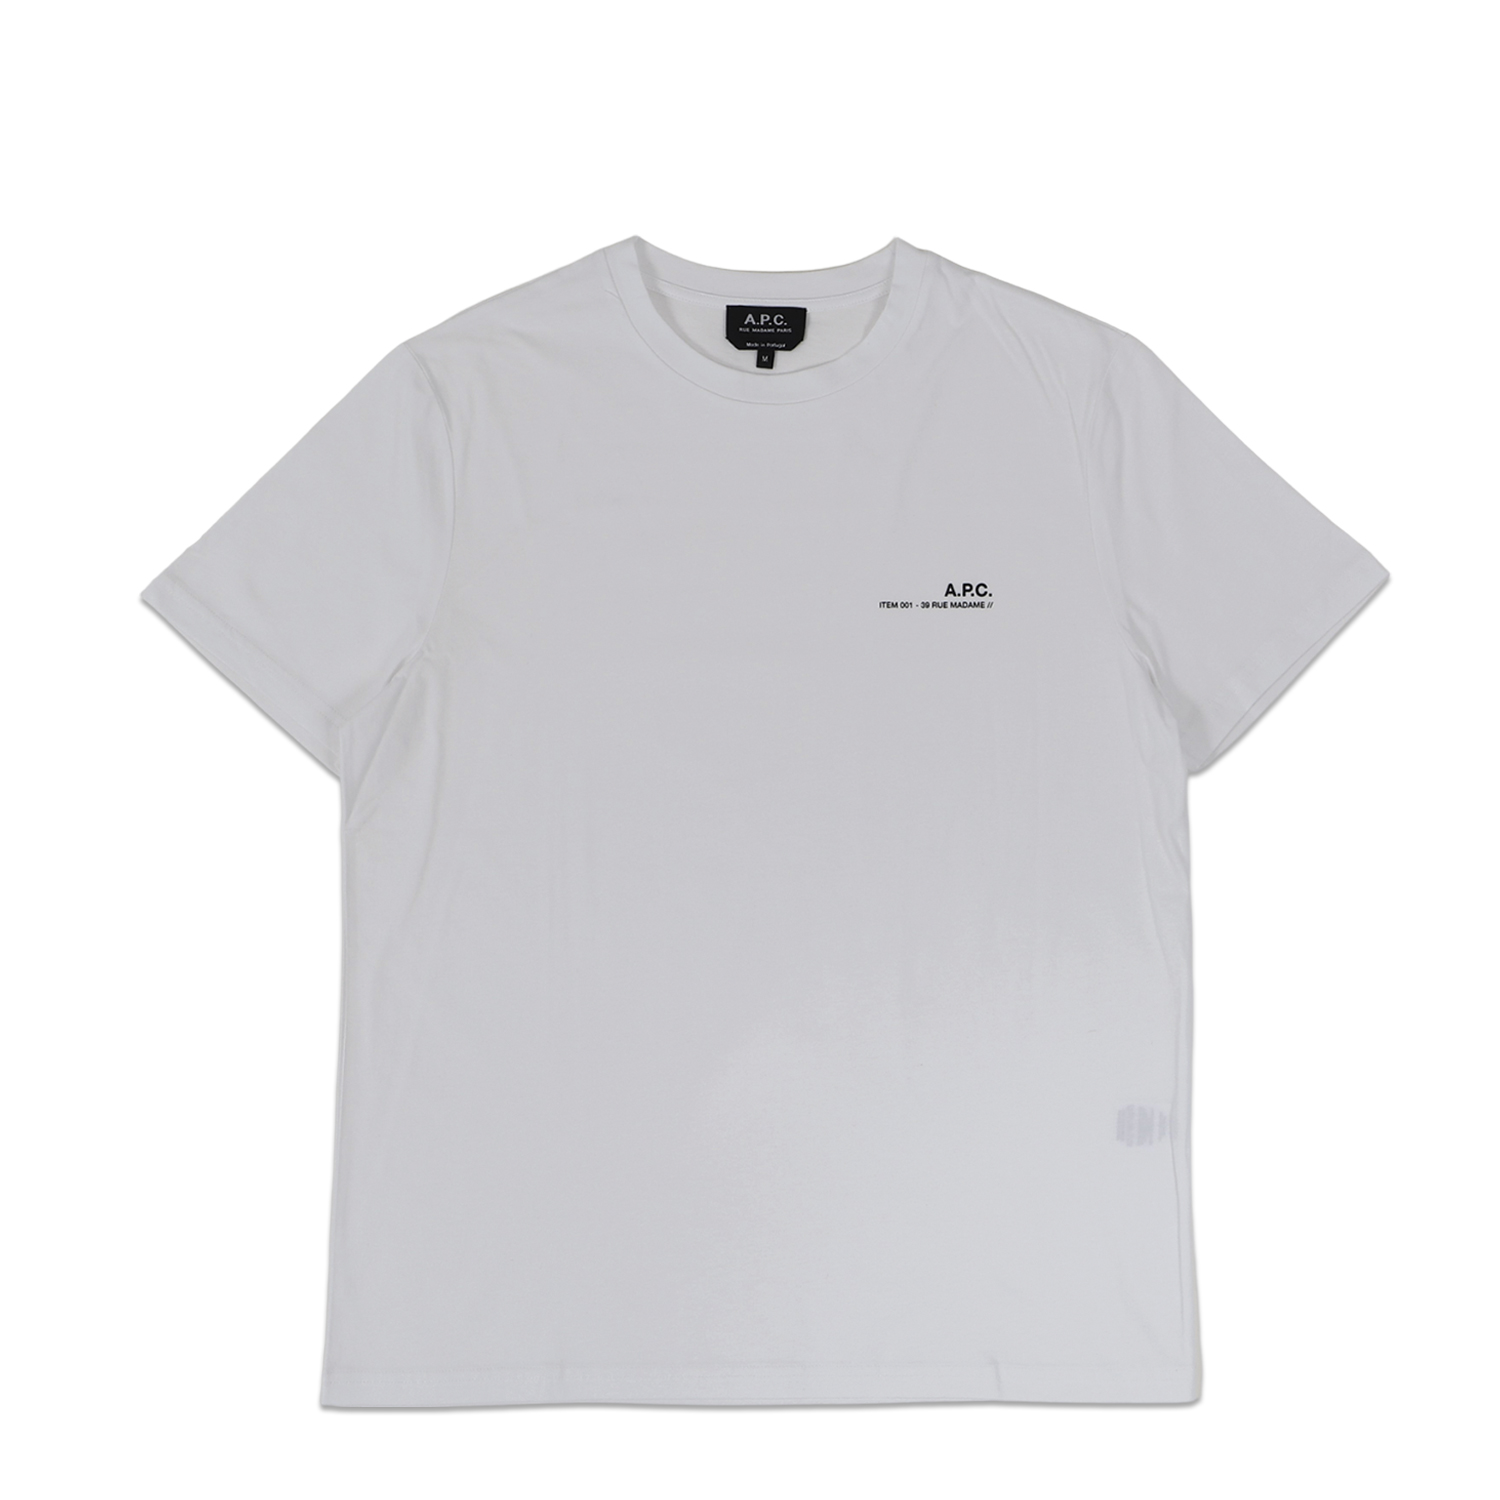 A.P.C. Tシャツ メンズ ITEM ホワイト 白 COFBT-H26904 アーペーセー 半袖